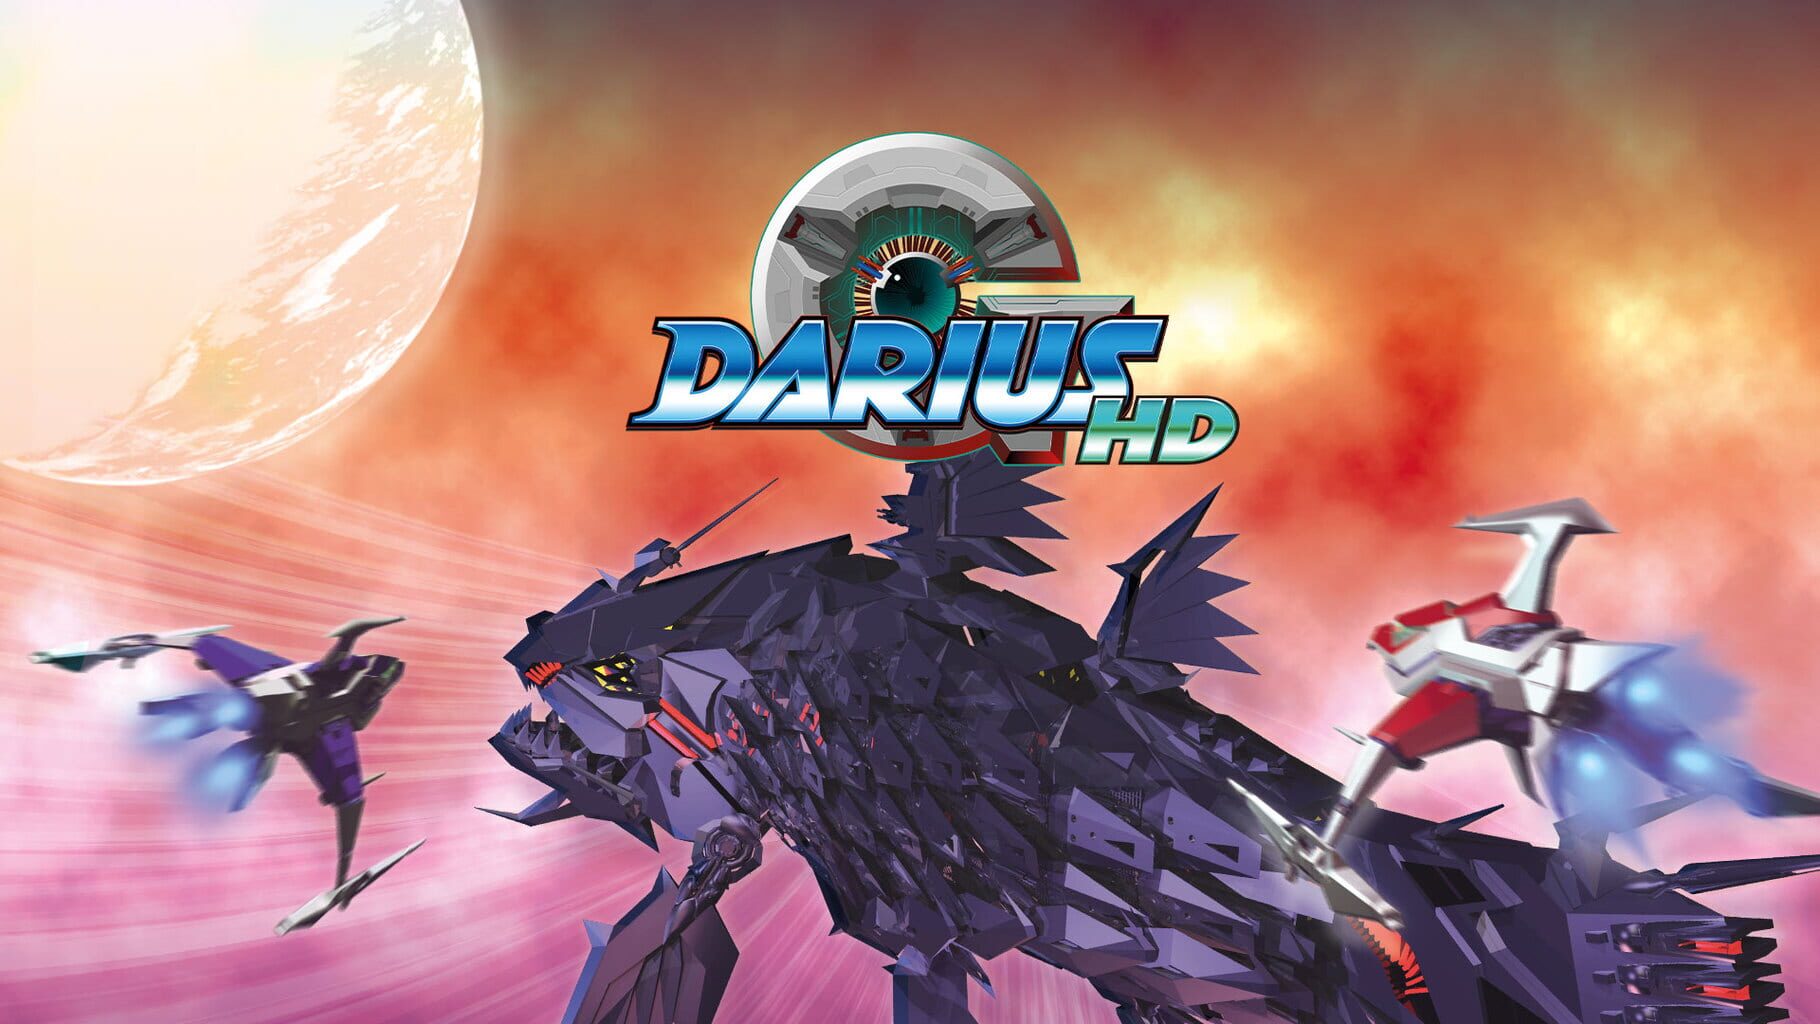 G-Darius HD artwork